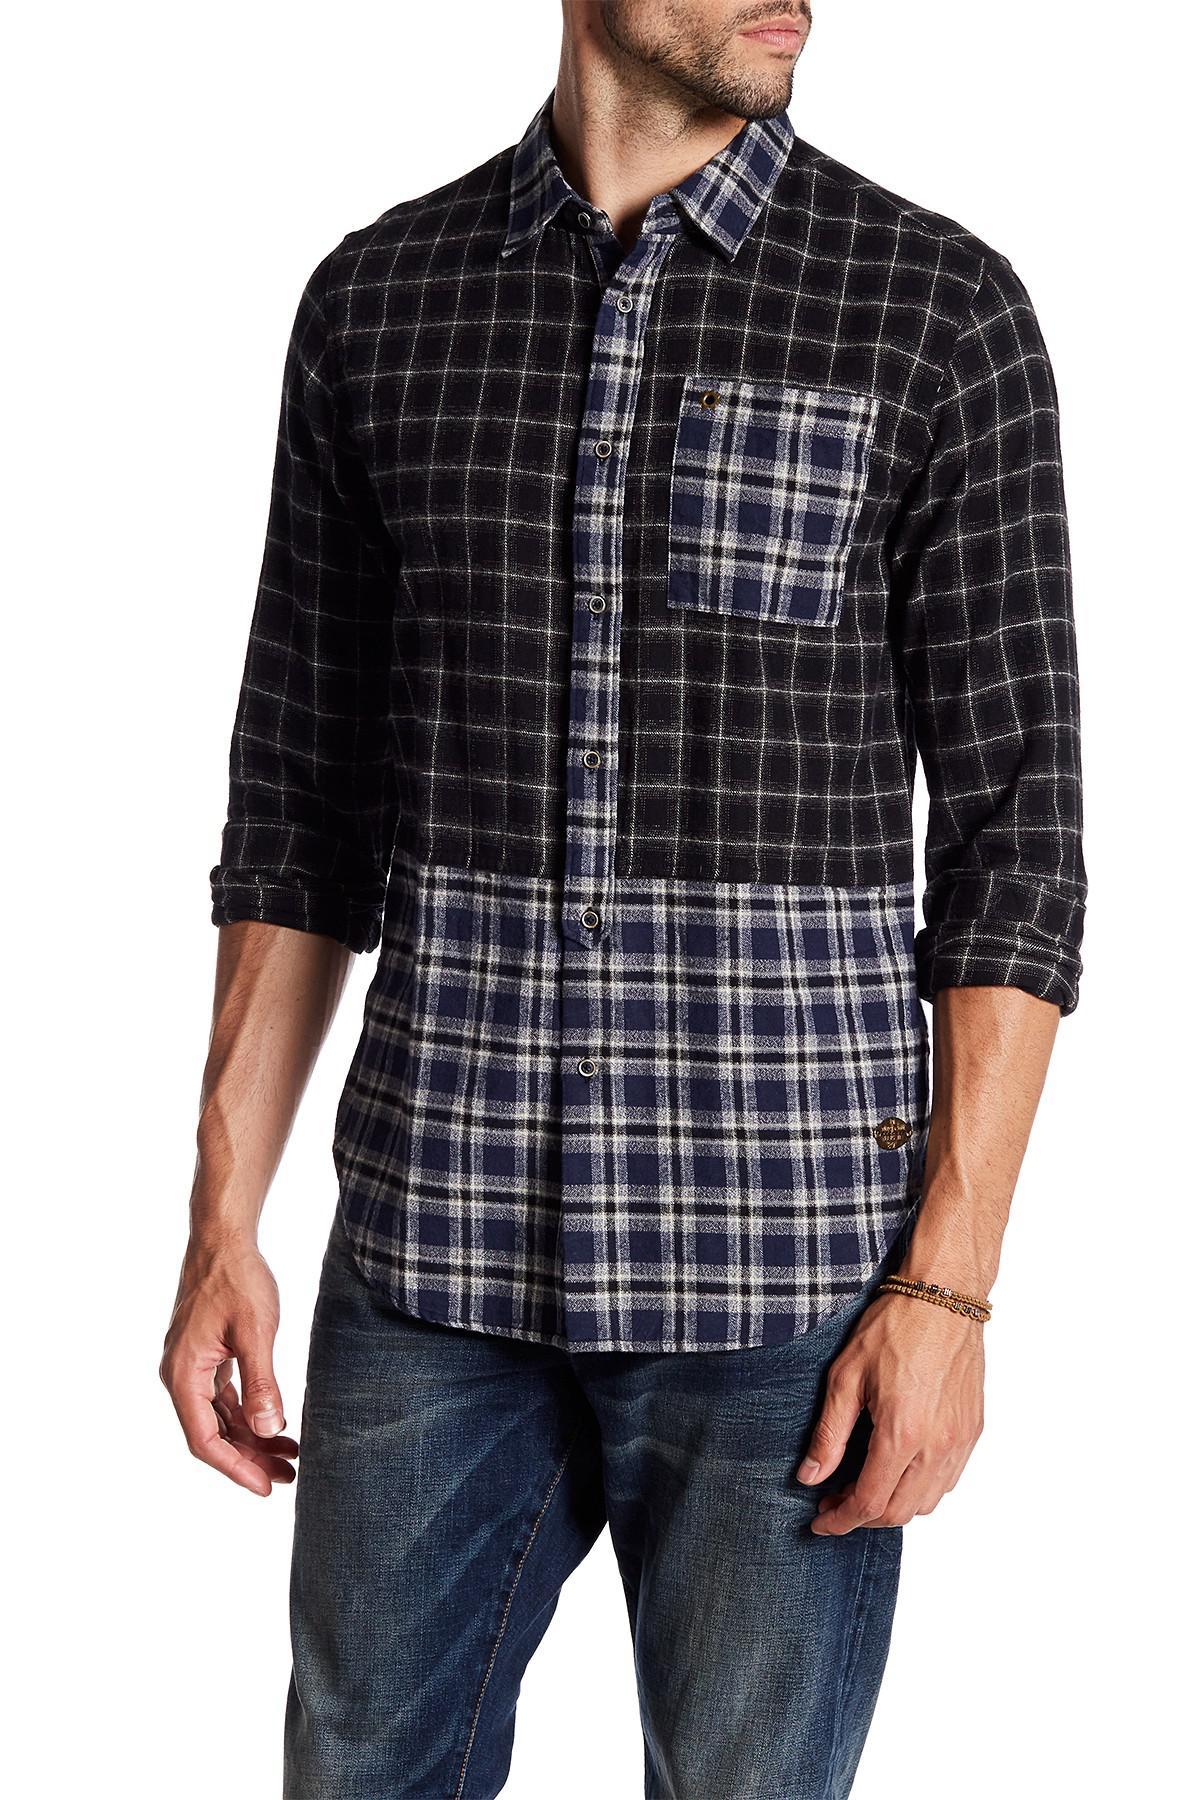 Scotch & Soda Plaid Flannel Shirt for Men - Lyst